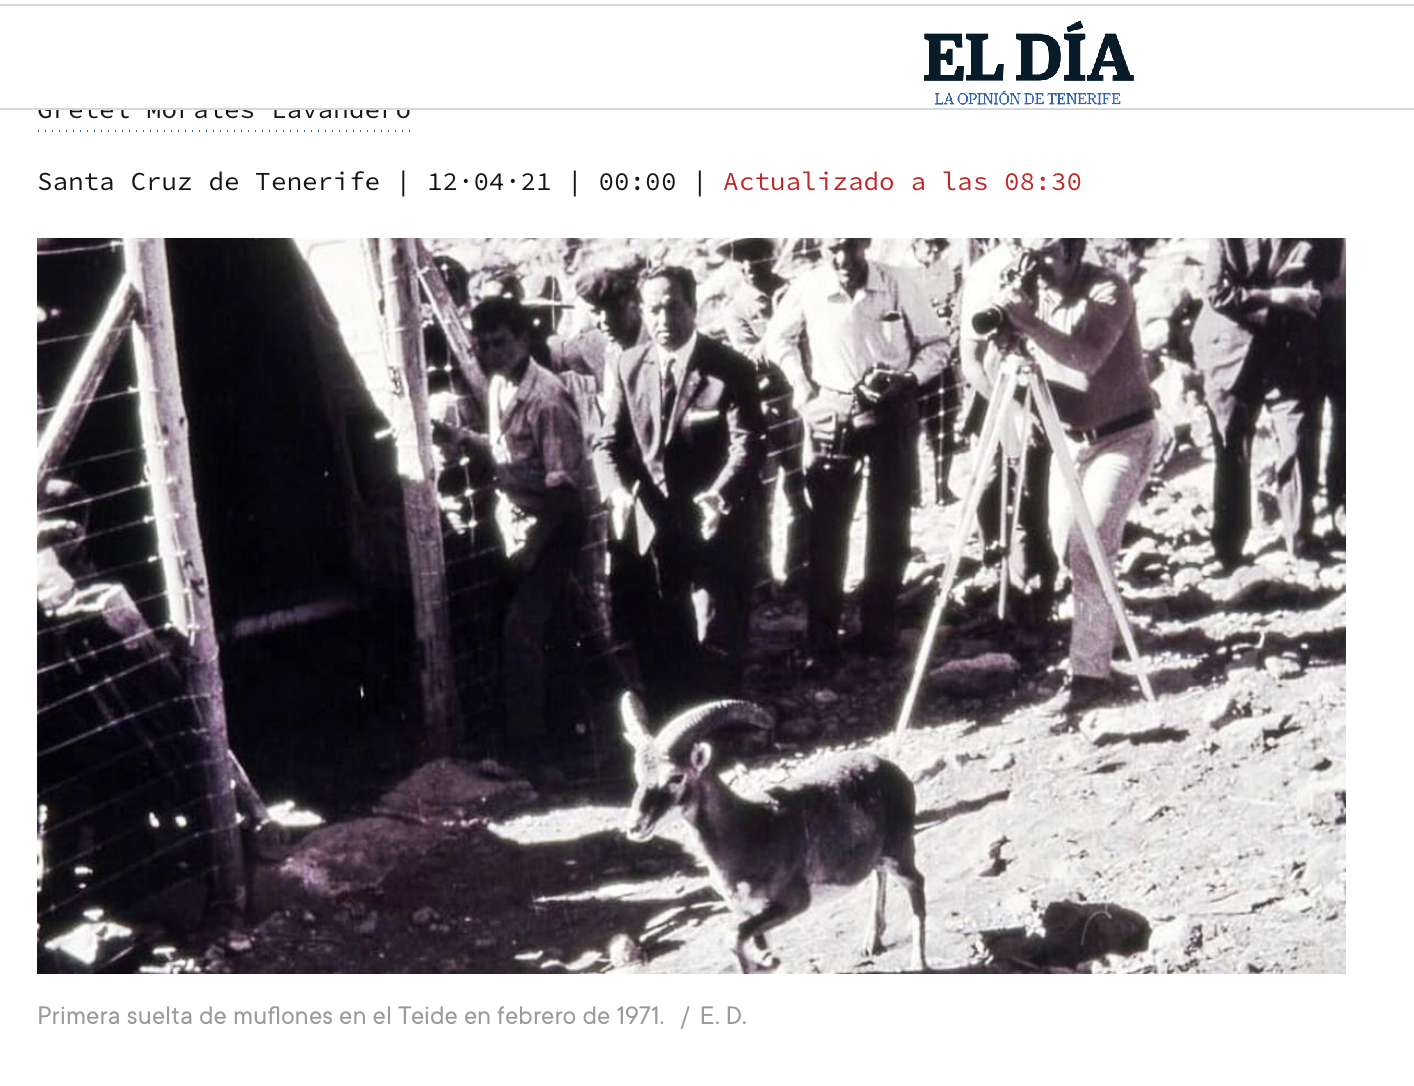 Im Februar 1971 wurde das 1. Mufflon in den Cañadas ausgewildert  - Foto EL DÌA